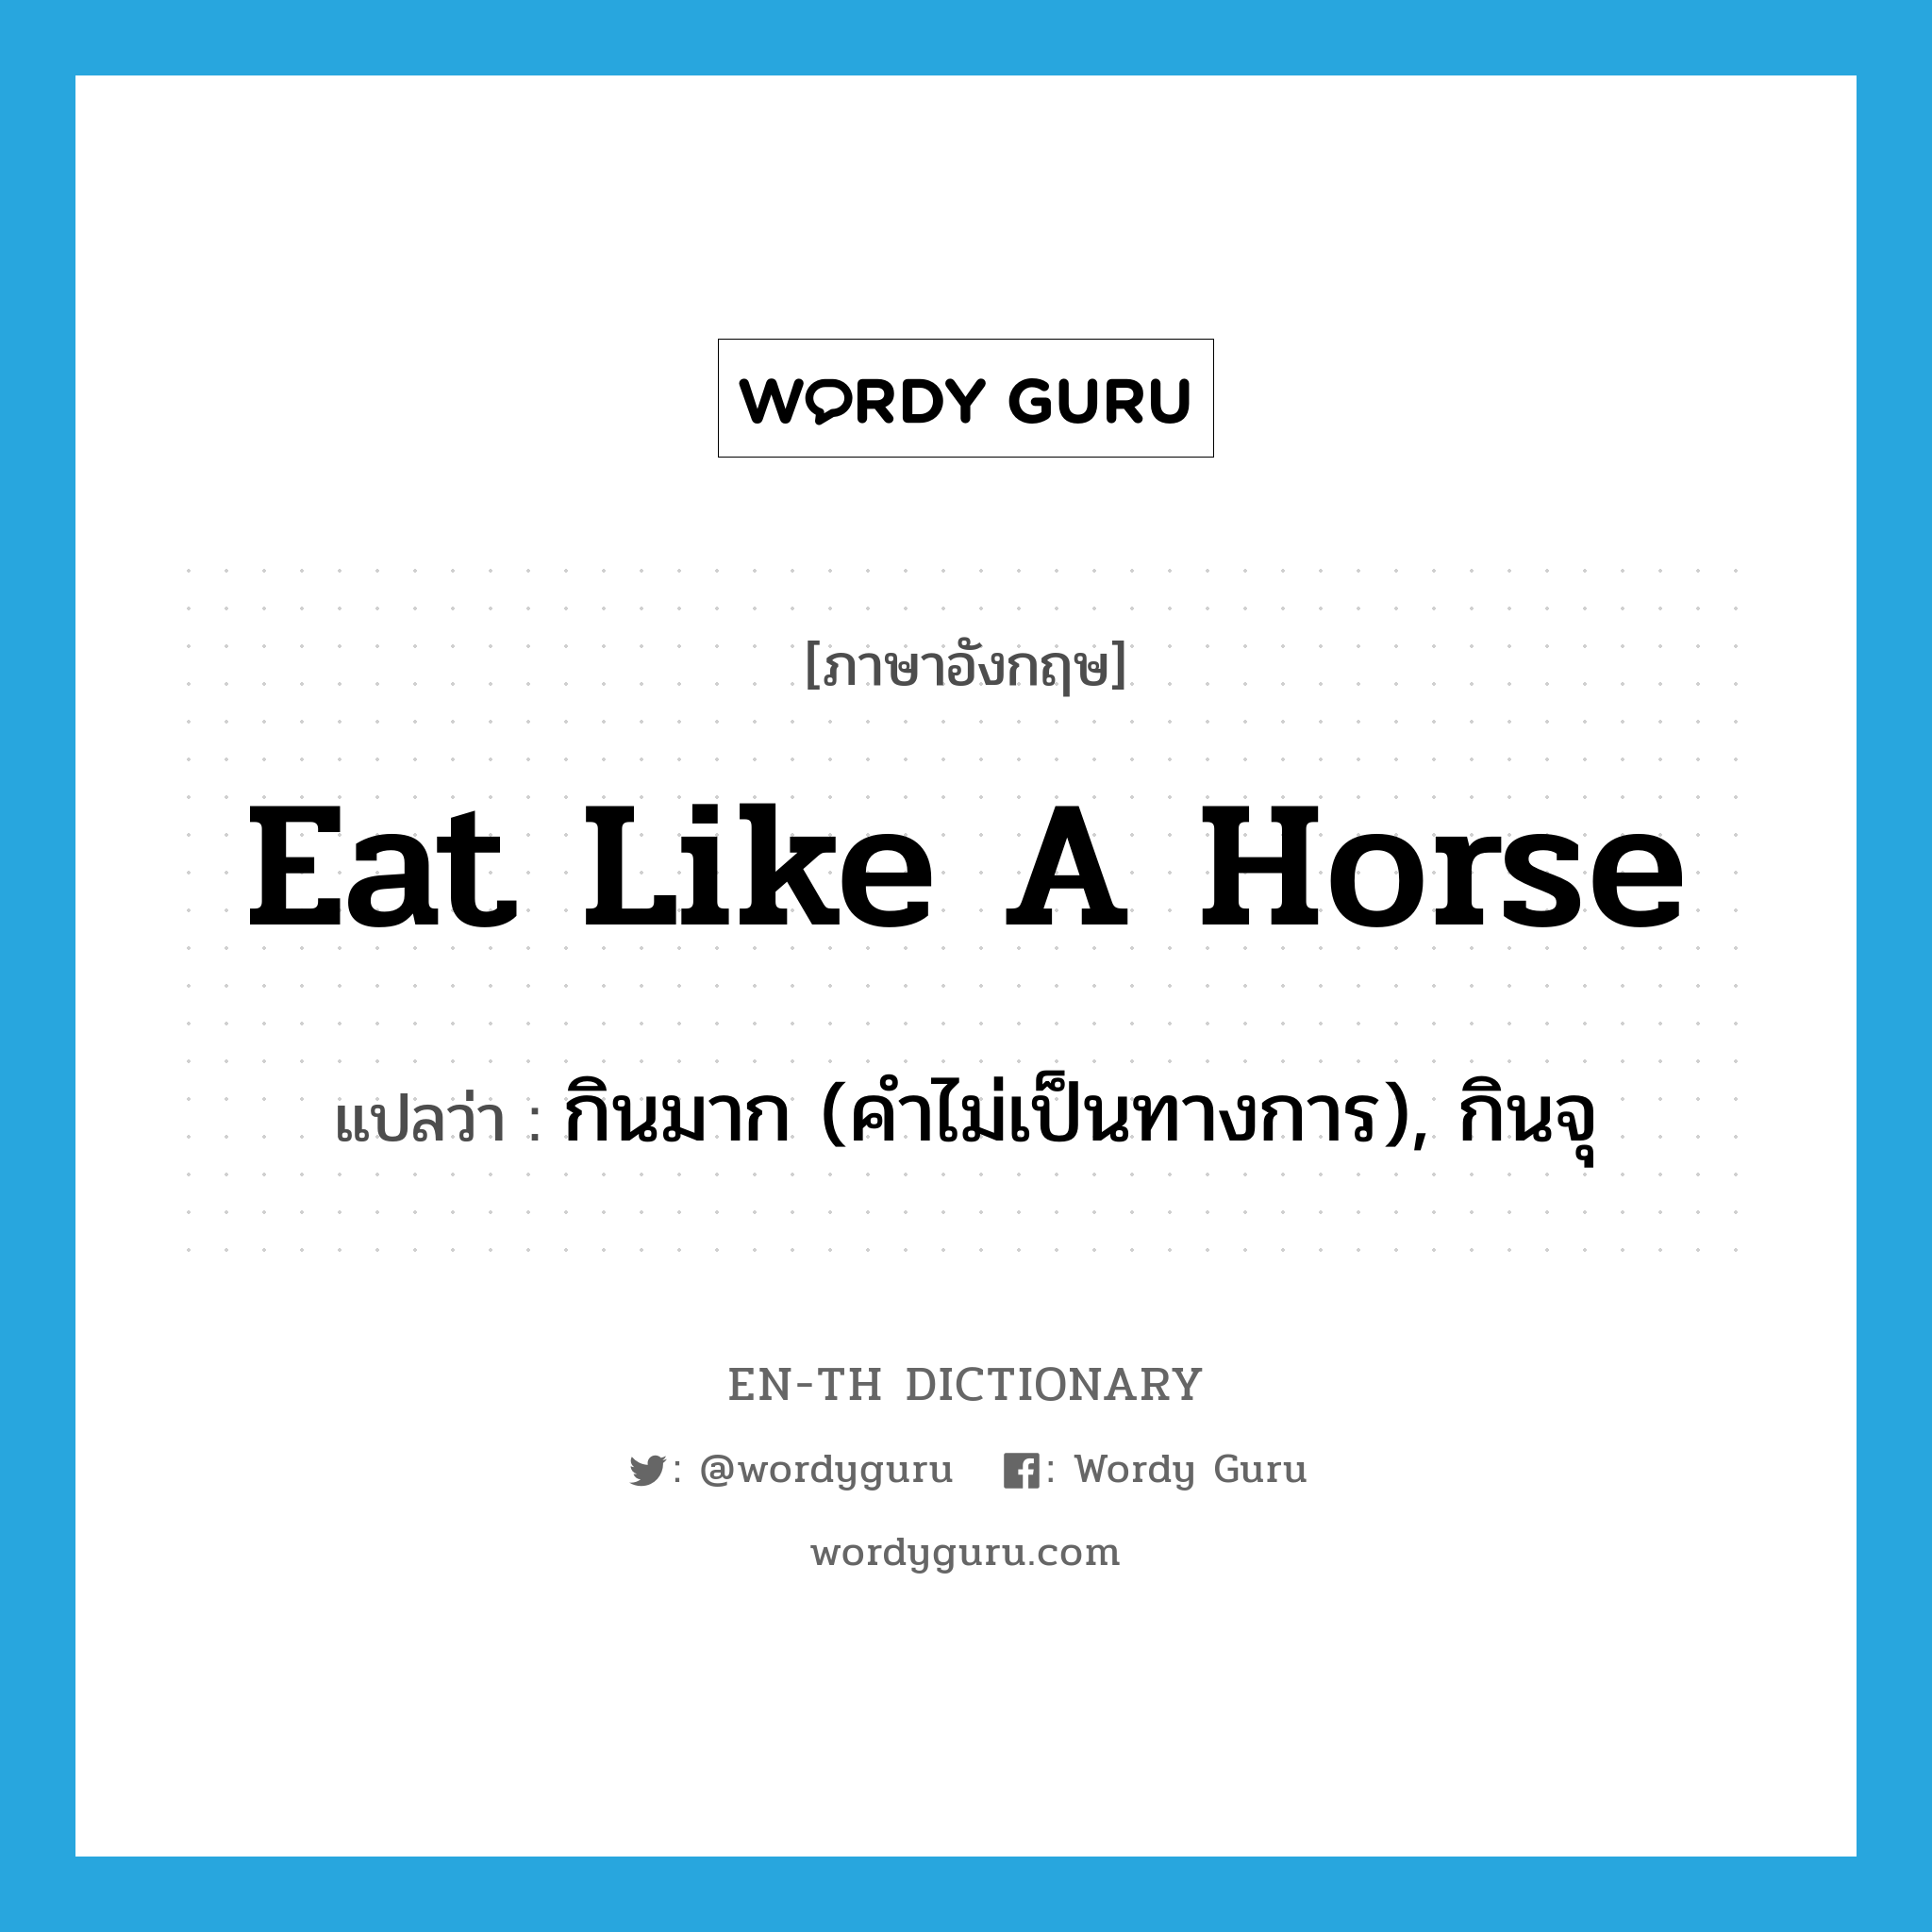 กินมาก (คำไม่เป็นทางการ), กินจุ ภาษาอังกฤษ?, คำศัพท์ภาษาอังกฤษ กินมาก (คำไม่เป็นทางการ), กินจุ แปลว่า eat like a horse ประเภท IDM หมวด IDM